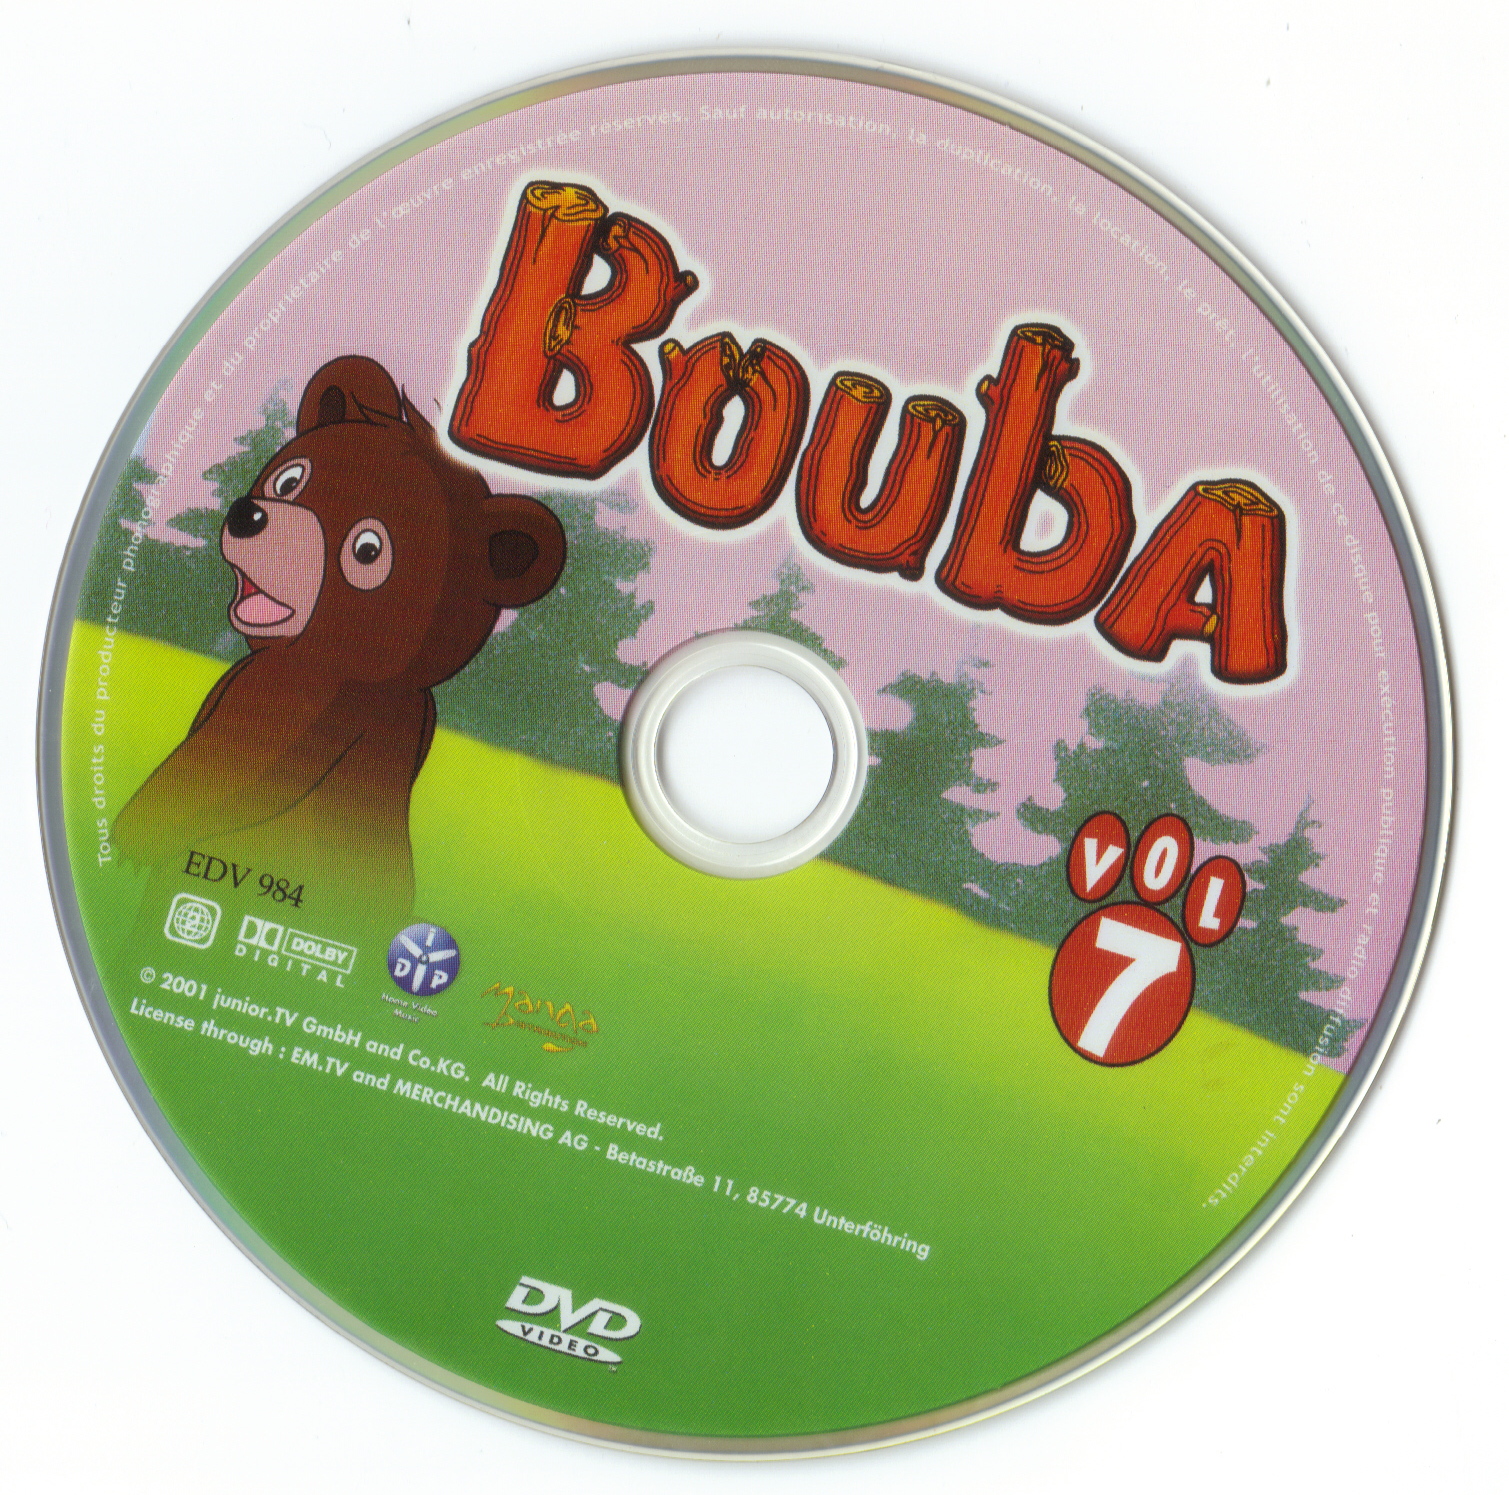 Bouba vol 07